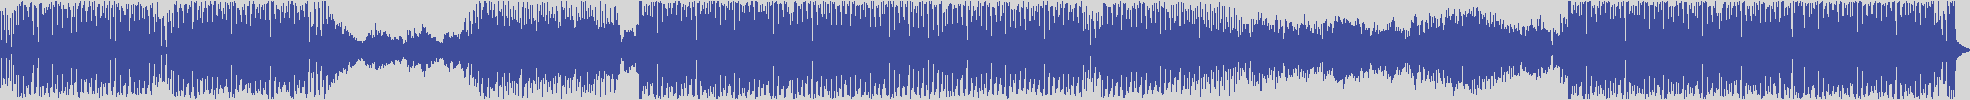 suxess [SX001] Alex Gaudino - No More [Simioli Remix] audio wave form